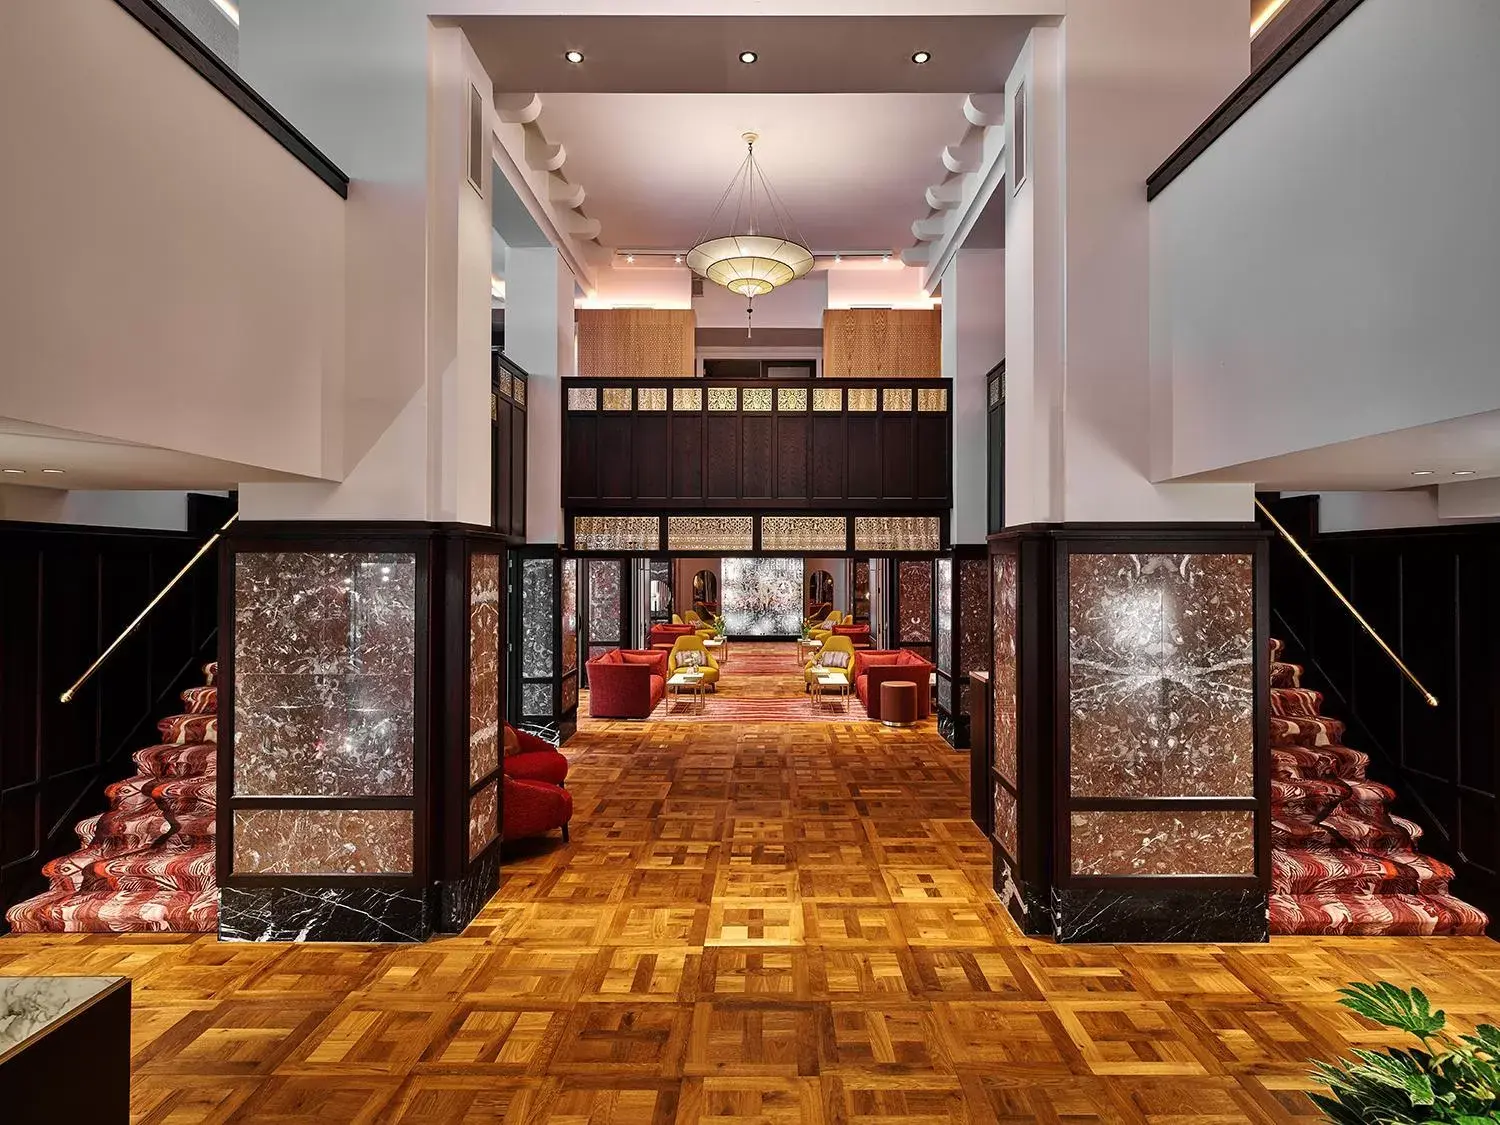 Lobby or reception, Lobby/Reception in Hard Rock Hotel Amsterdam American